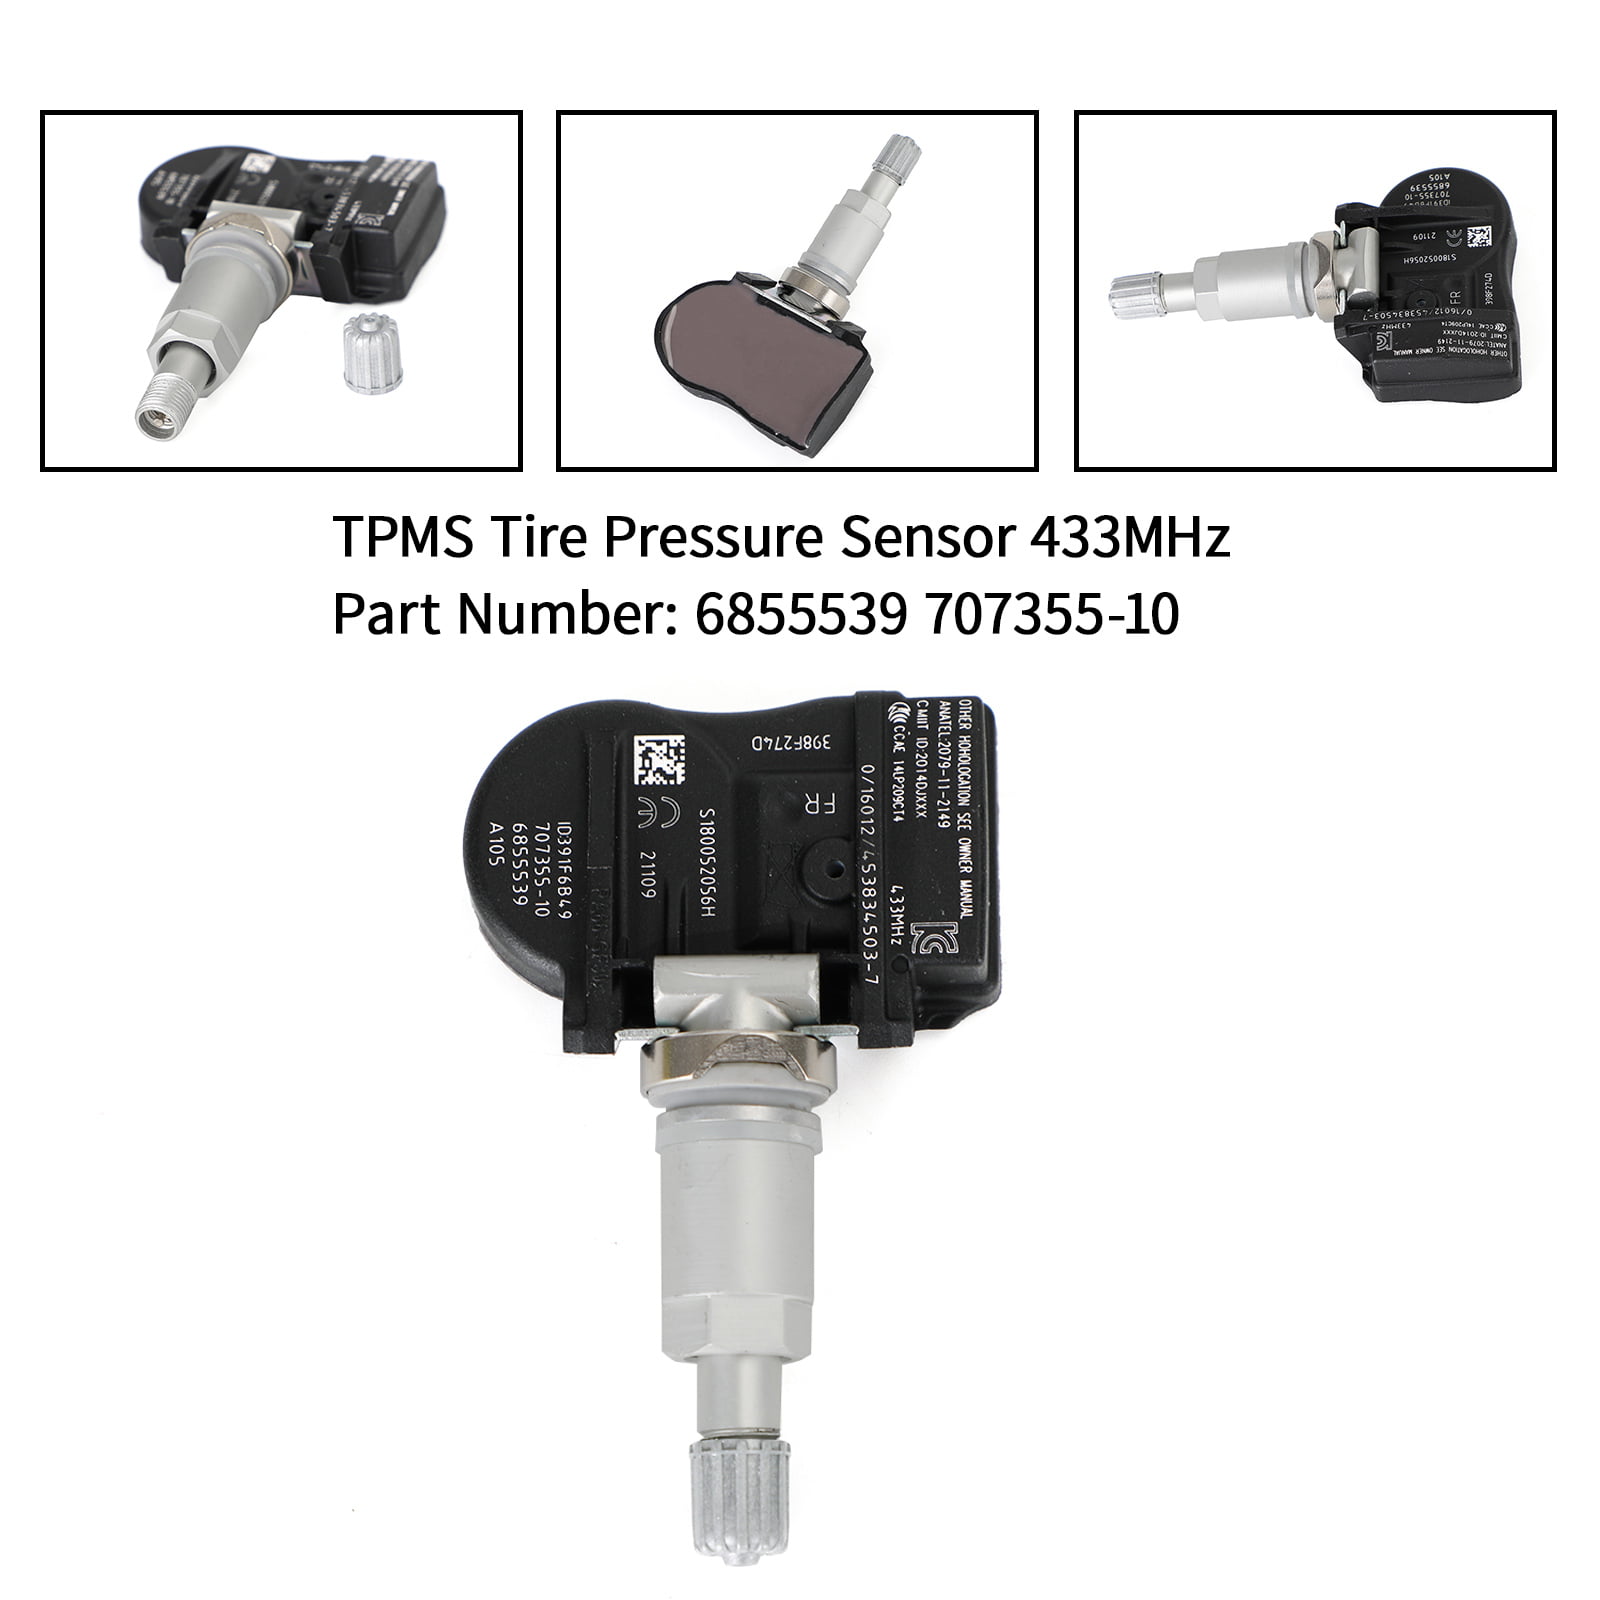 4X Tpms detecteur capteur pression pneu For BMW 36106855539 707355